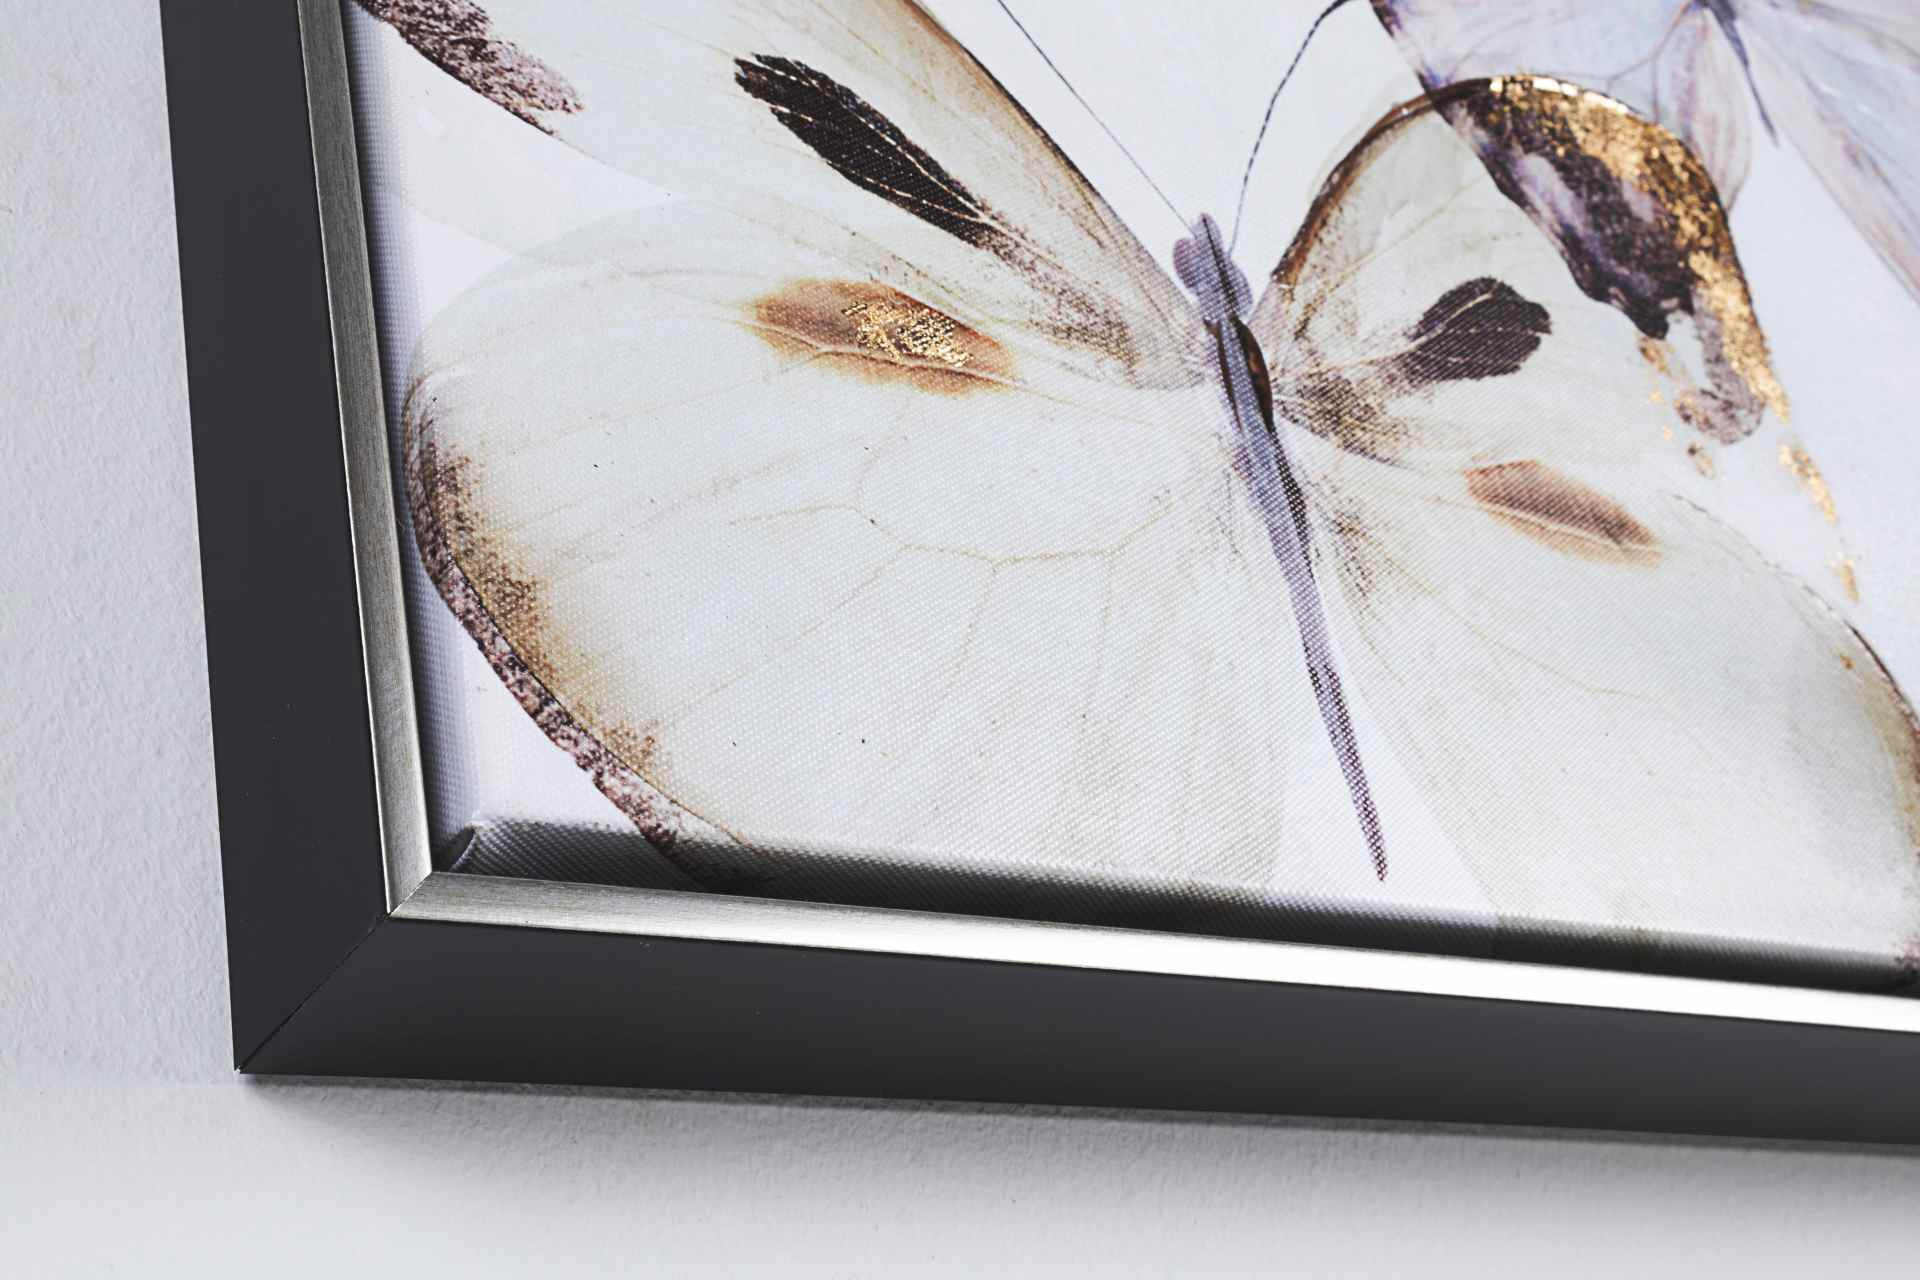 Das Ölbild Butterfly No.1 überzeugt mit ihrem klassischen Design. Das Bild verfügt über einen Druck auf Leinwand. Das Gestell ist aus Tannenholz und der Rahmen aus Kunststoff. Die Maße sind 82x82 cm.